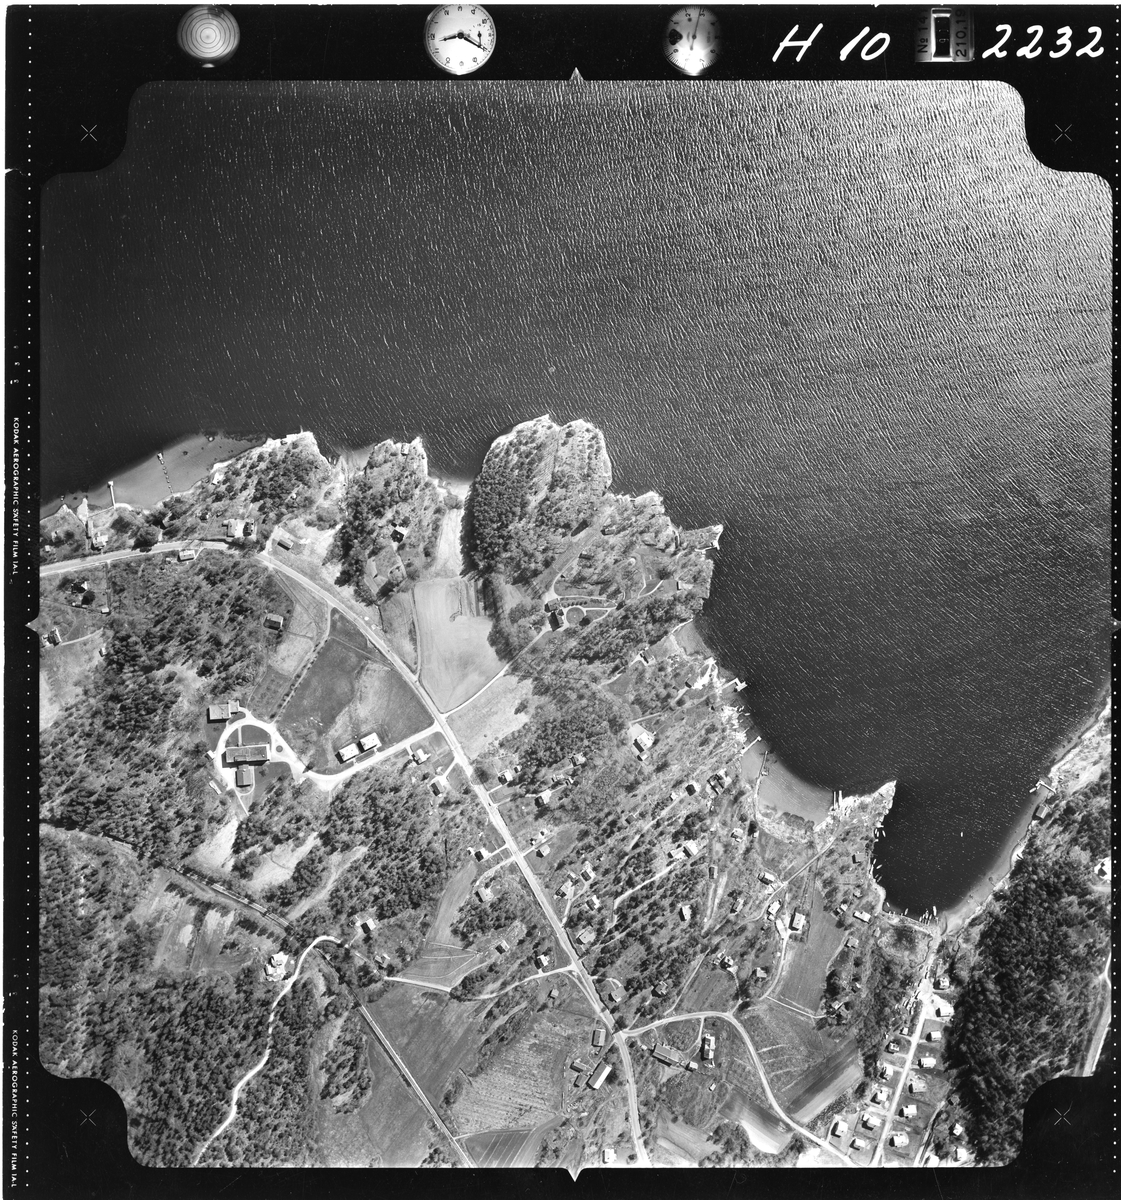 Flyfotoarkiv fra Fjellanger Widerøe AS, fra Porsgrunn Kommune, Skjelsvik. Fotografert 16/05-1962. Oppdrag nr 2232, H10